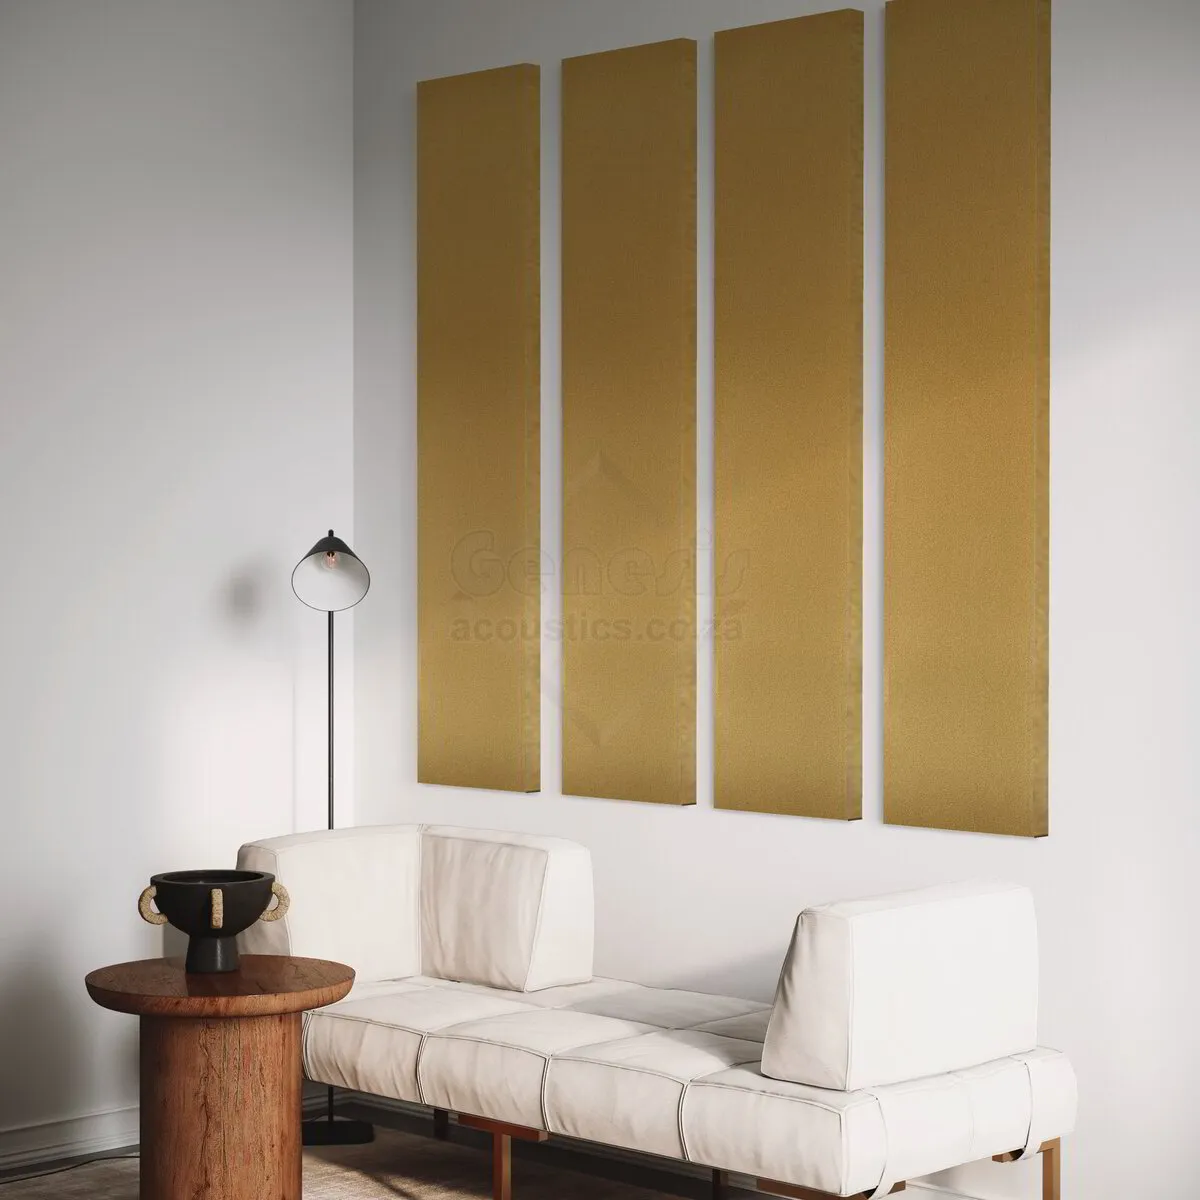 S5 Pro Acoustic Wall Panels - 180cm x 40cm Set of 4 - Lemon